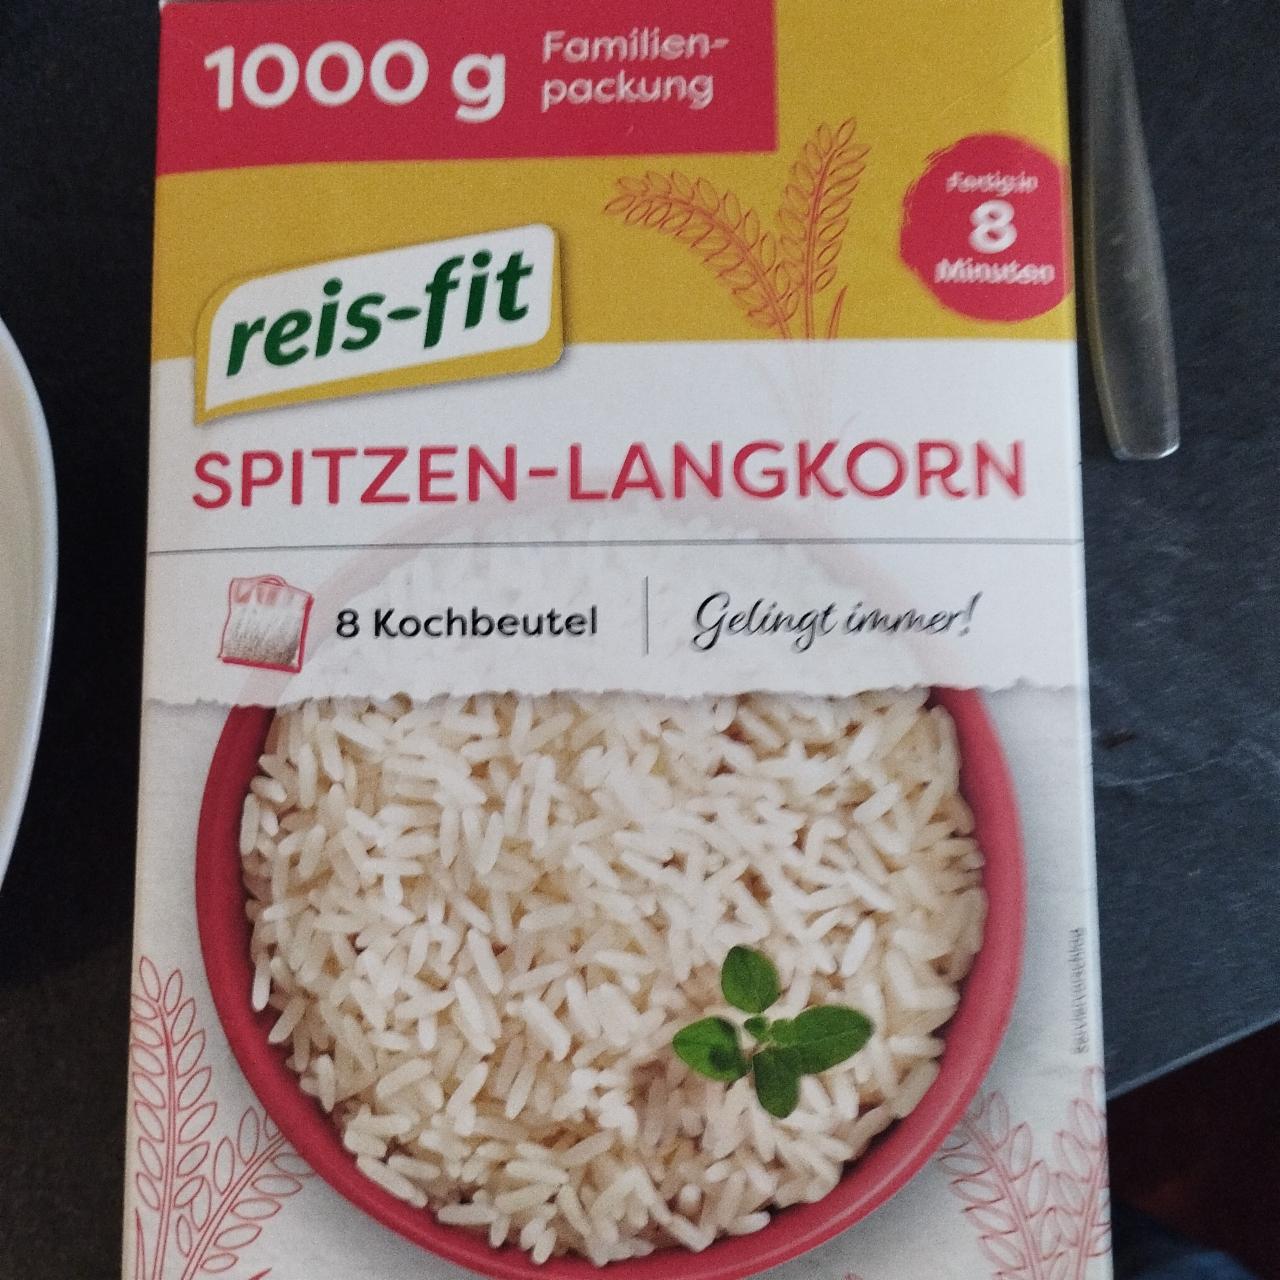 Фото - рис герм в пакетиках длиннозерный Reis-fit